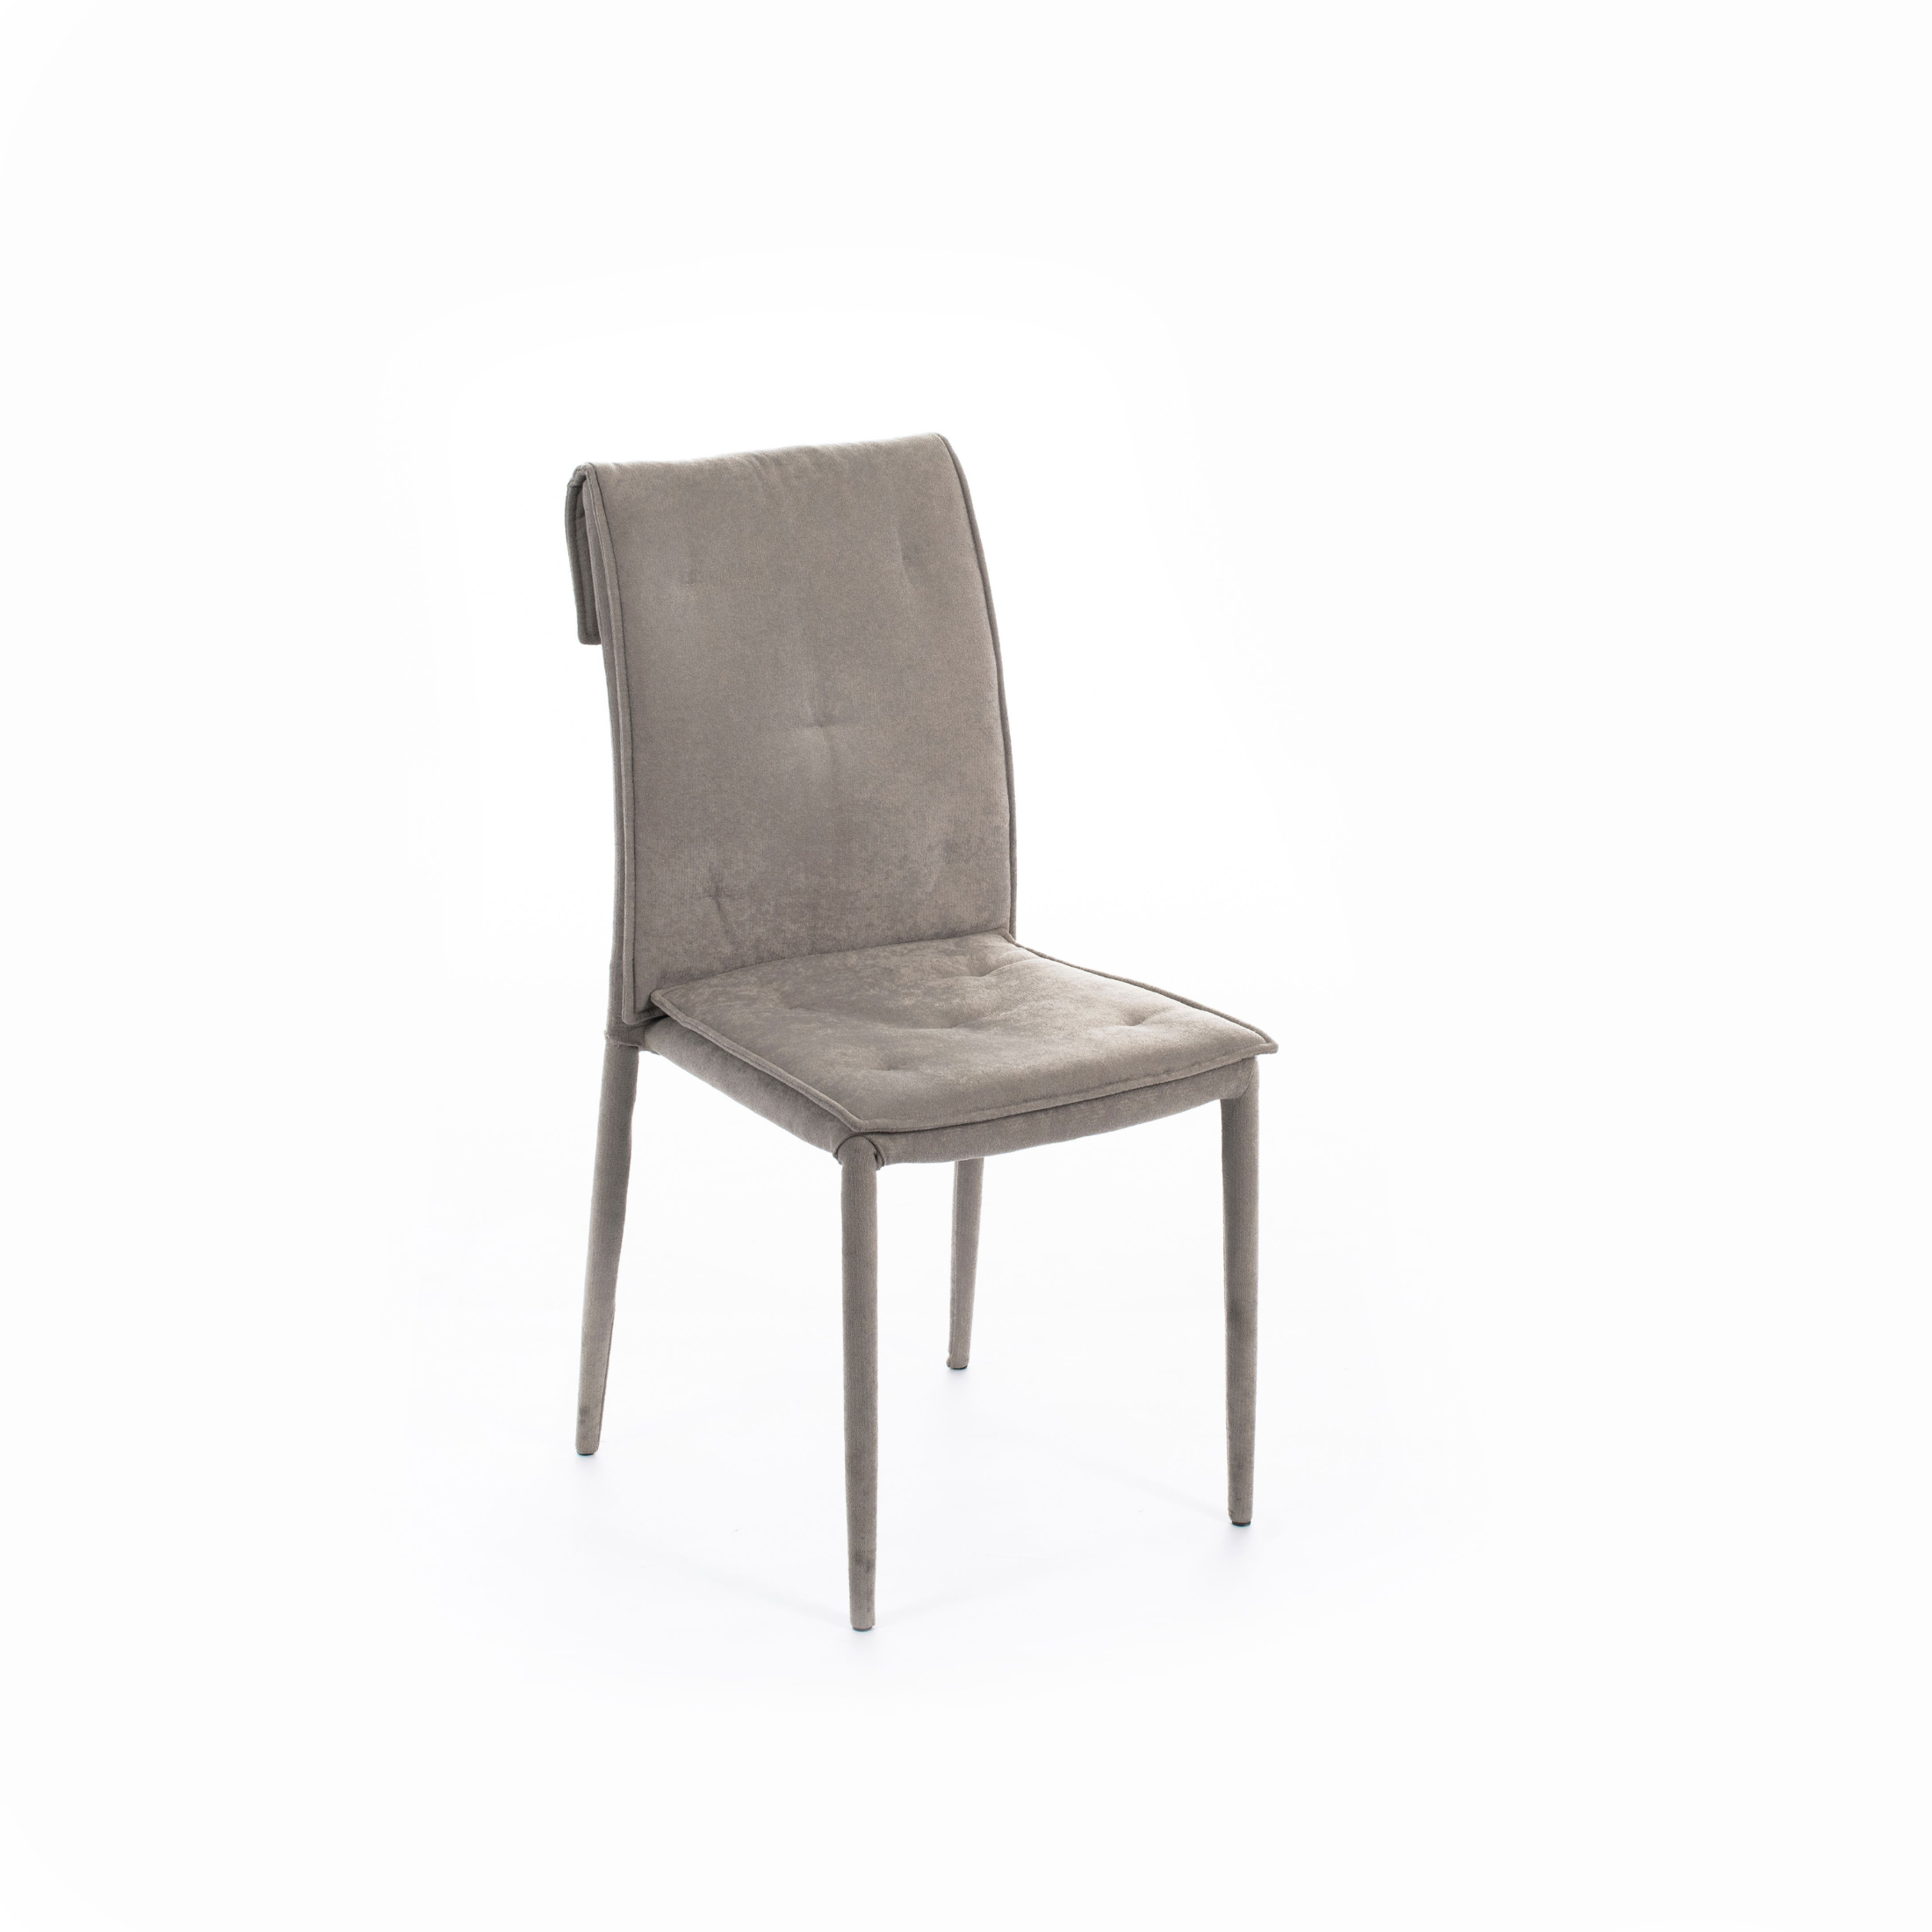 Chaise moderne rembourrée en tissu "Wanda" avec pieds en métal recouverts 44x56 cm 91h